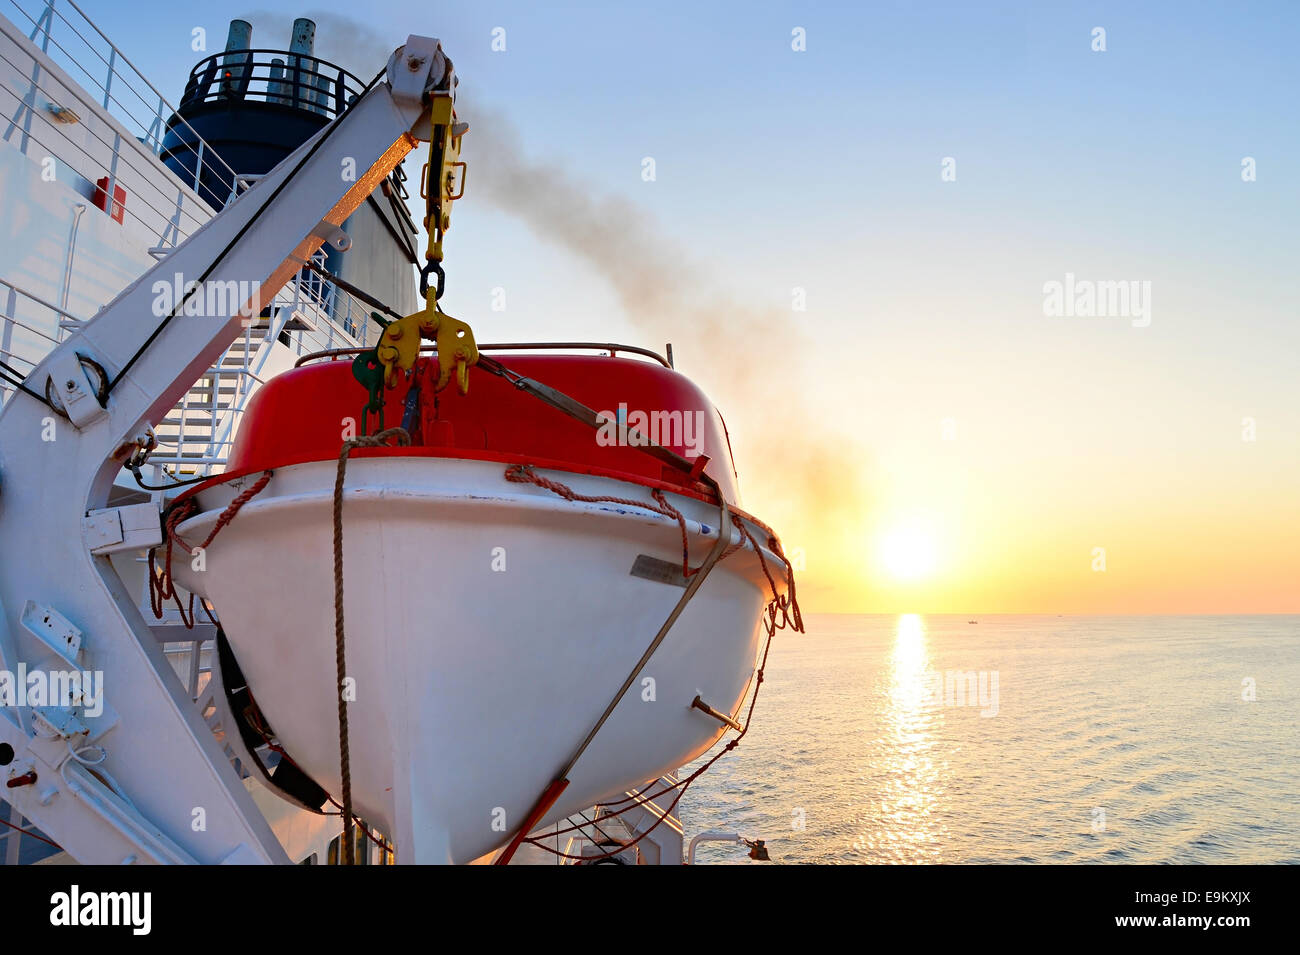 Vue d'une embarcation sur un bateau de croisière au lever du soleil Banque D'Images